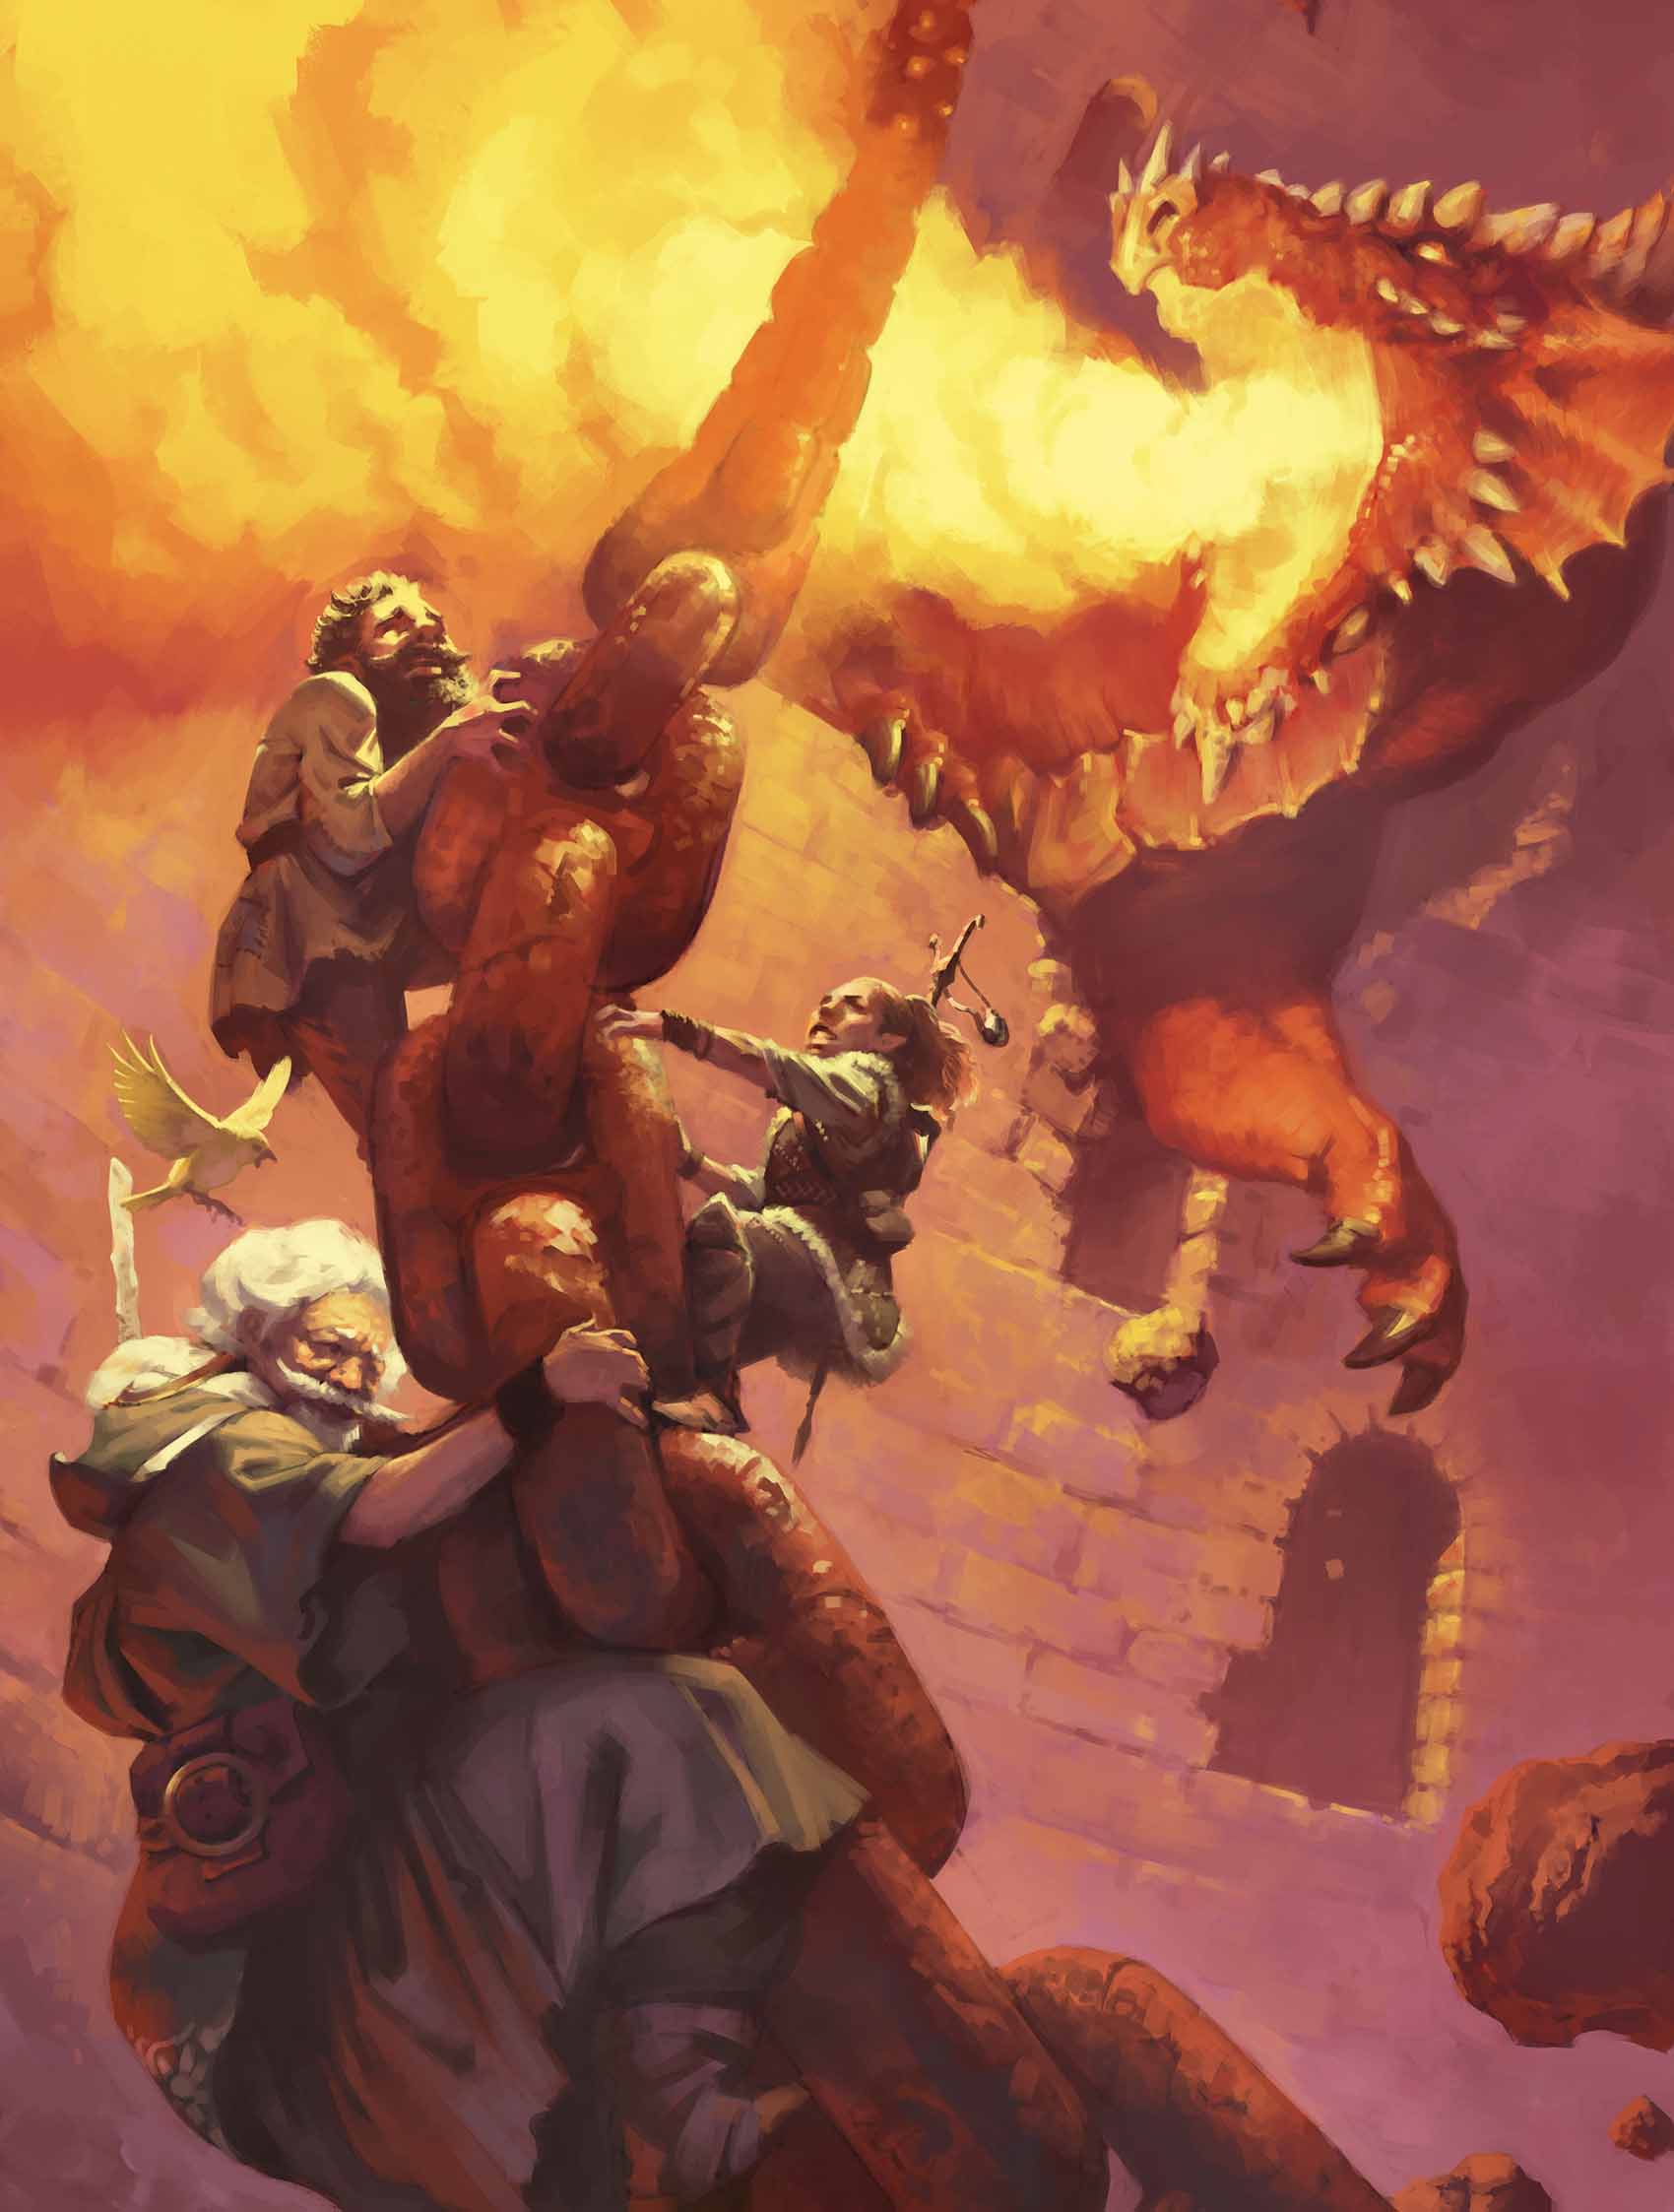 Маскируясь под Физбана Невероятного, Бахамут помогает двум героям спастись от пламенного гнева красного дракона